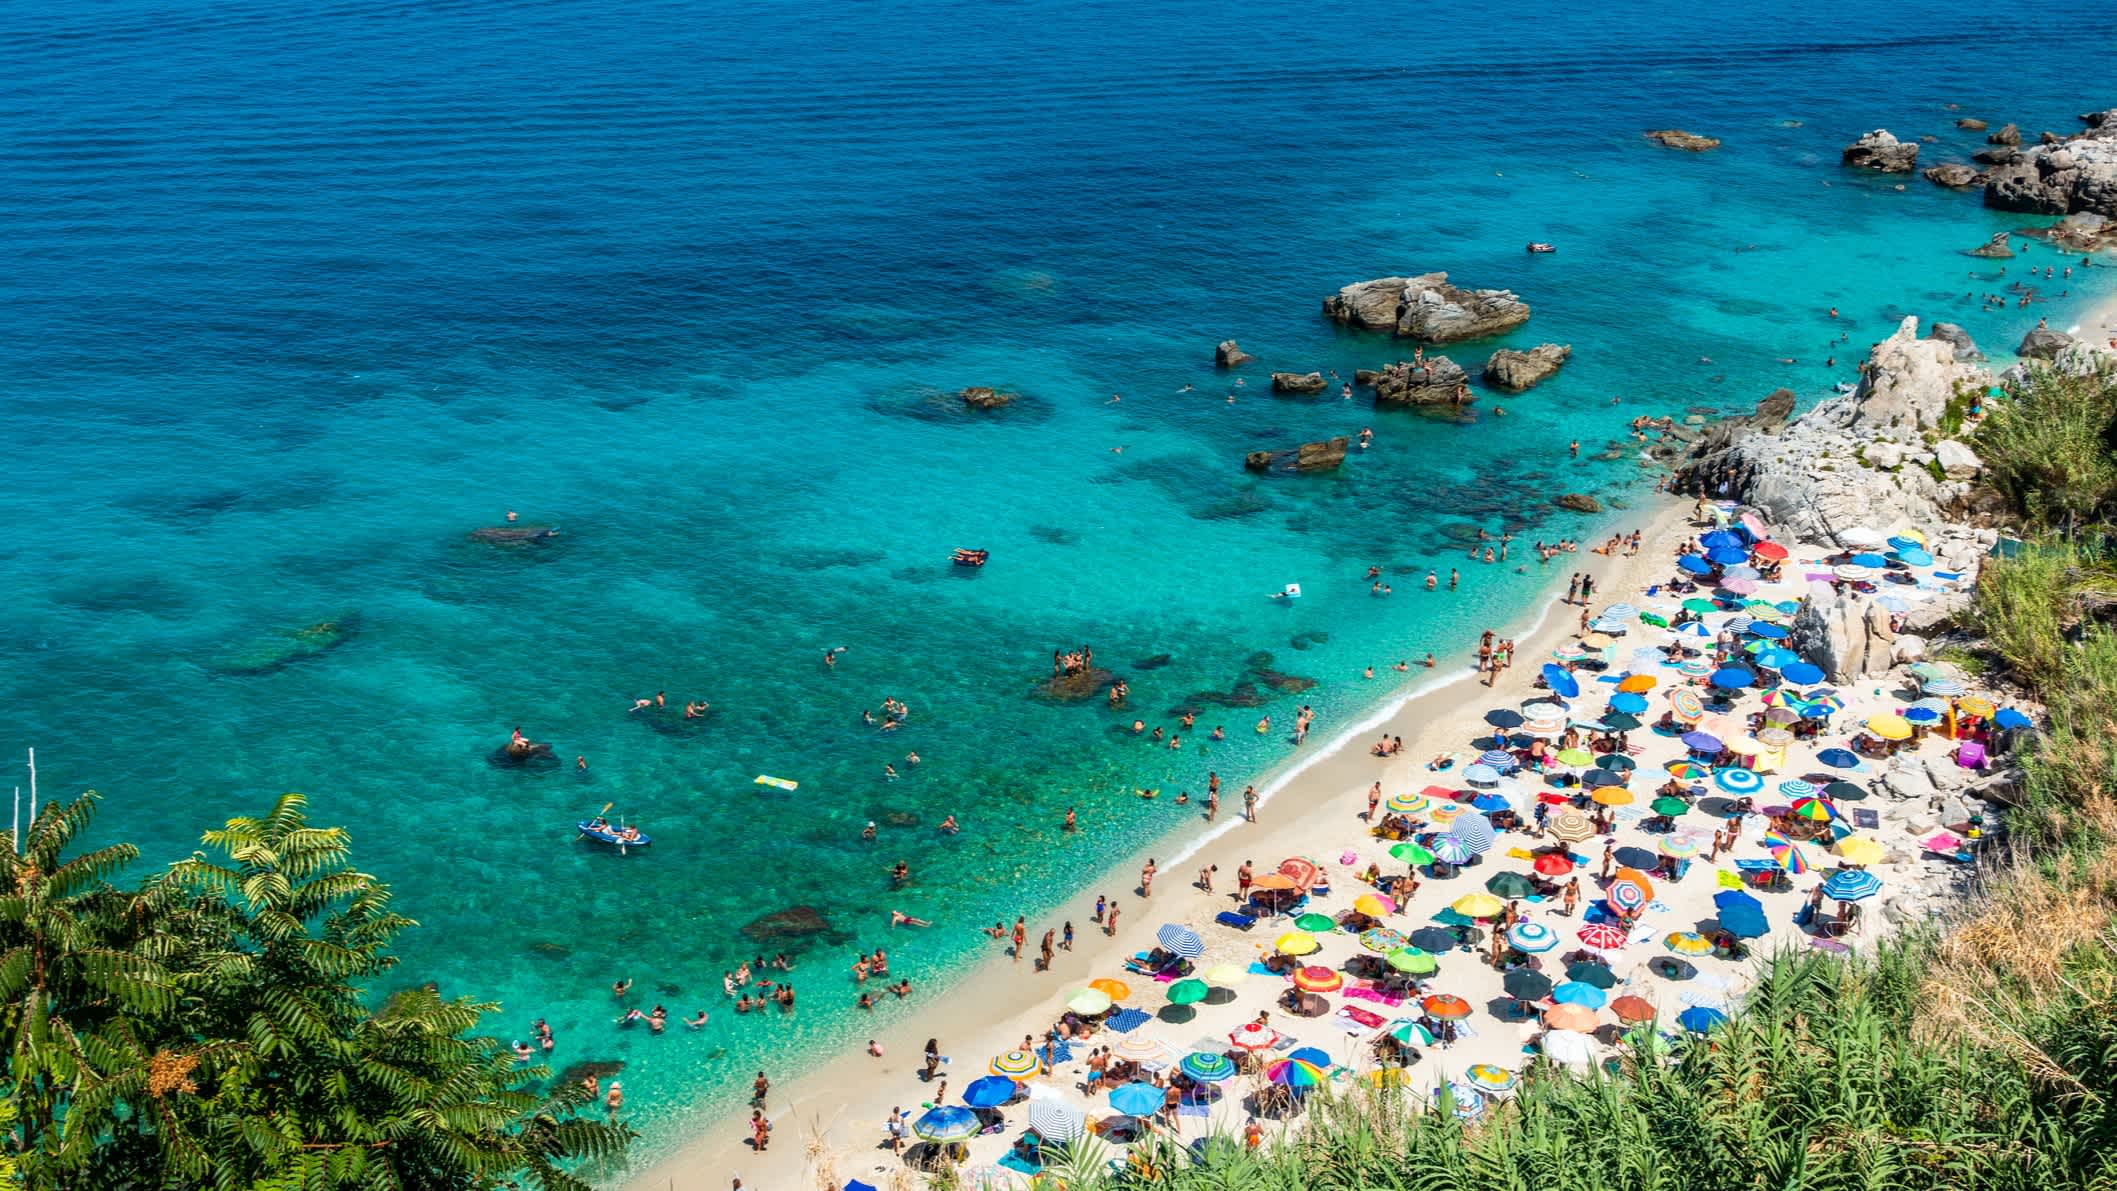 Vue aérienne sur les parasols colorés et la végétation luxuriante sur la plage de Parghelia, en Calabre, Italie.